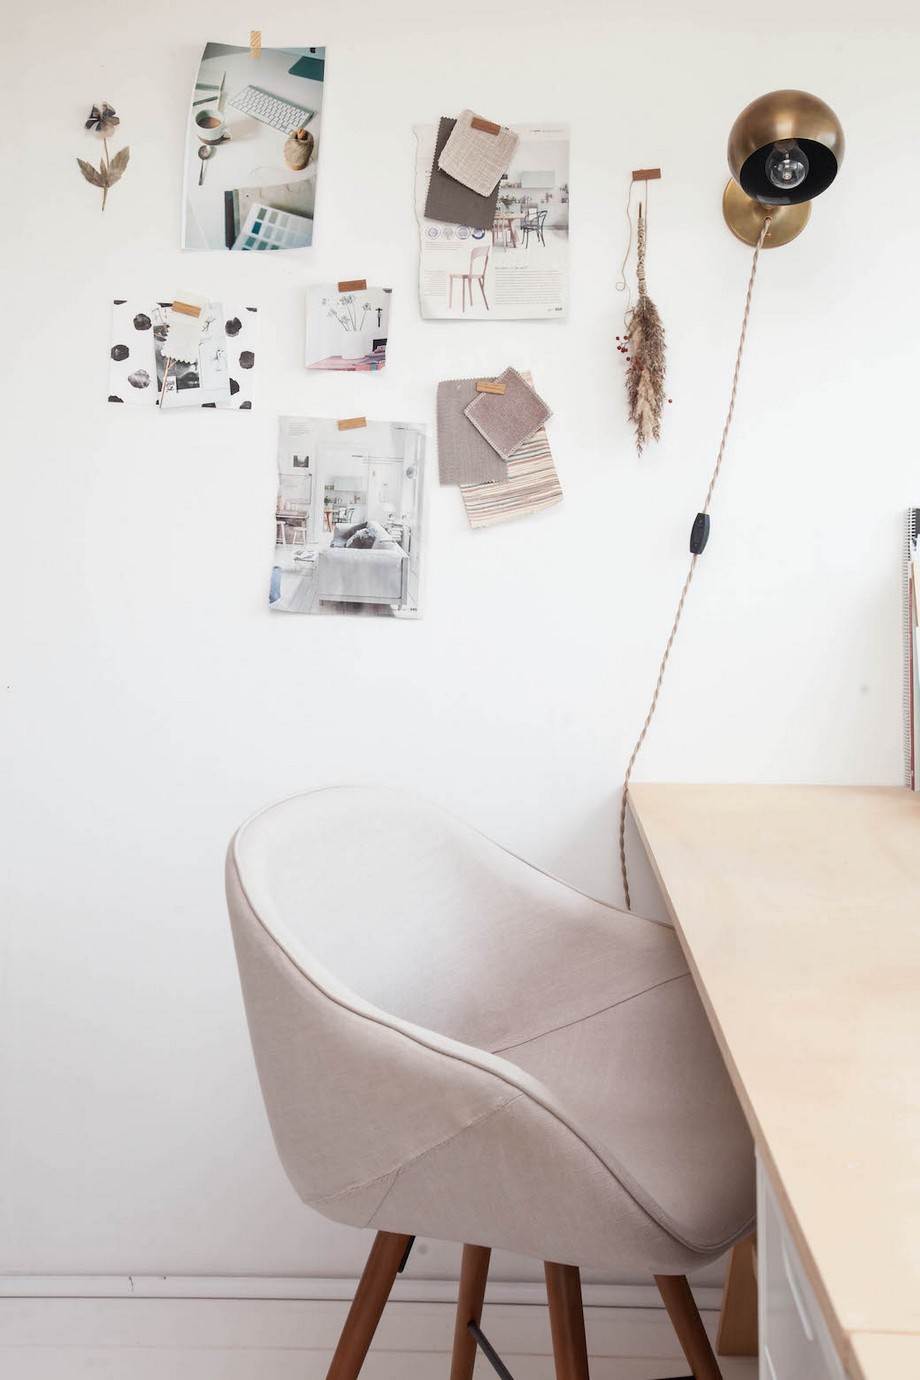 Đột nhập mẫu thiết kế văn phòng nhỏ kết hợp nhà ở trang nhã, gọn gàng > Thiết kế văn phòng làm việc tại nhà đẹp và lãng mạn